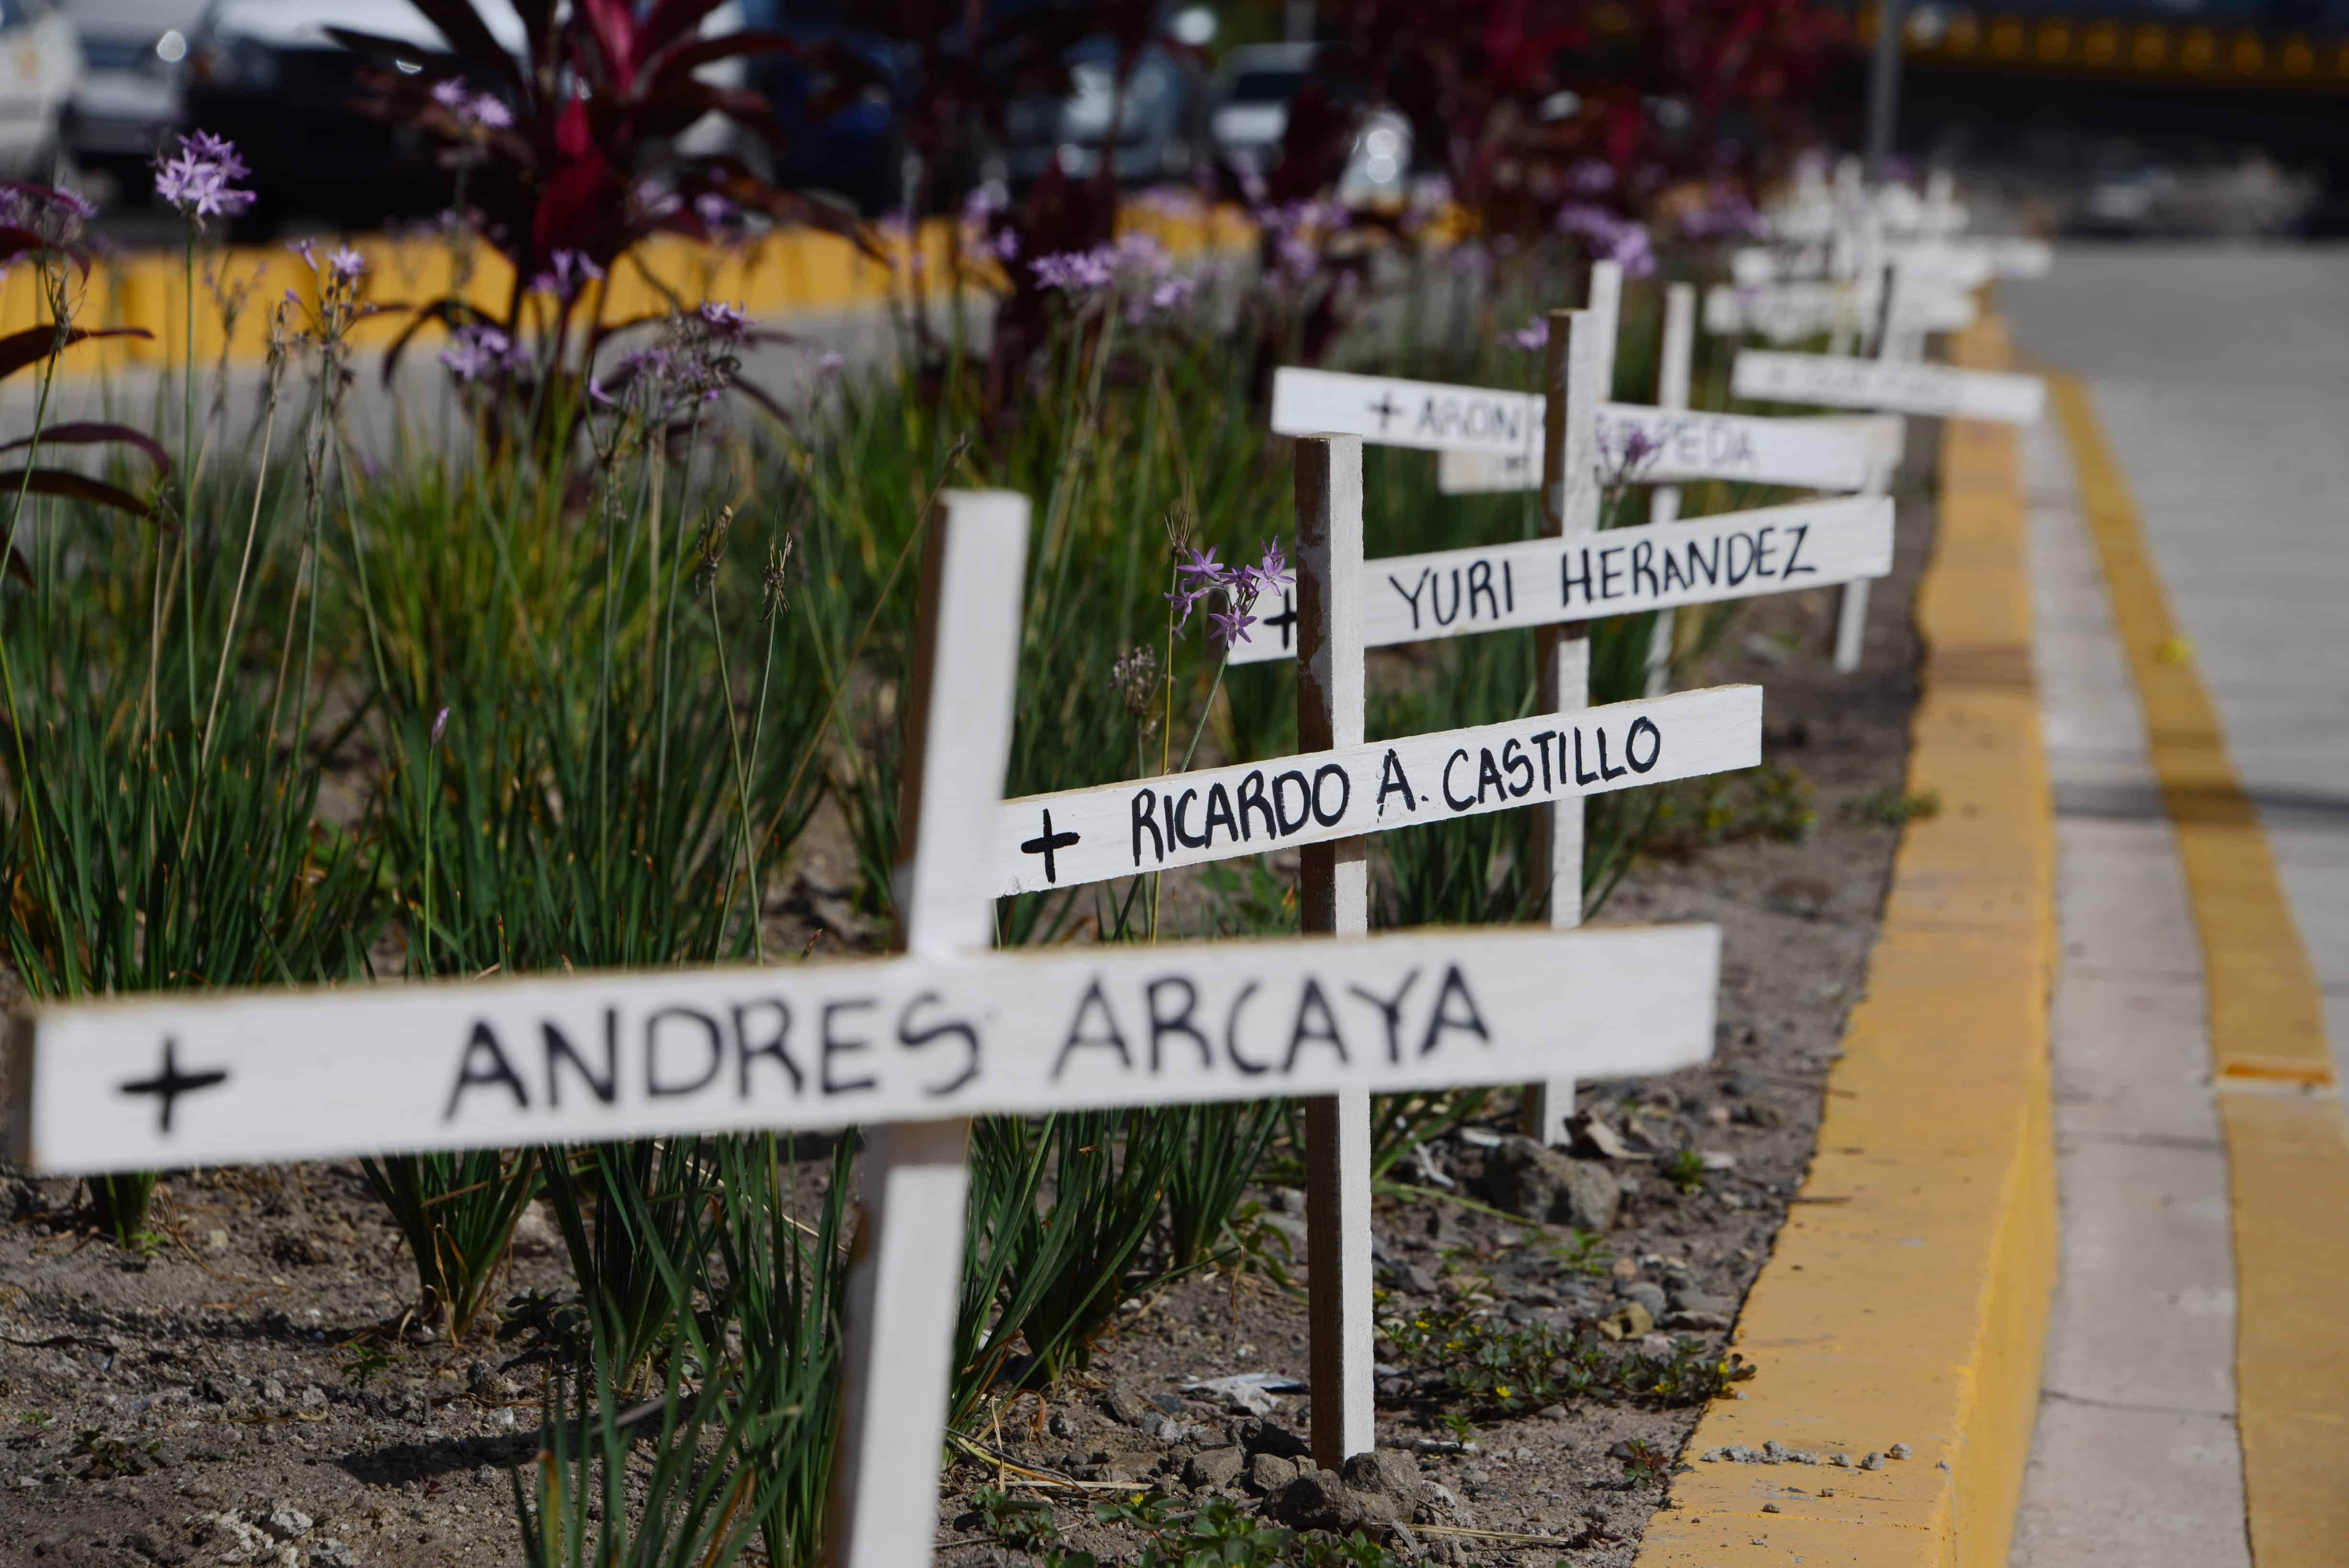 Violence in Latin America